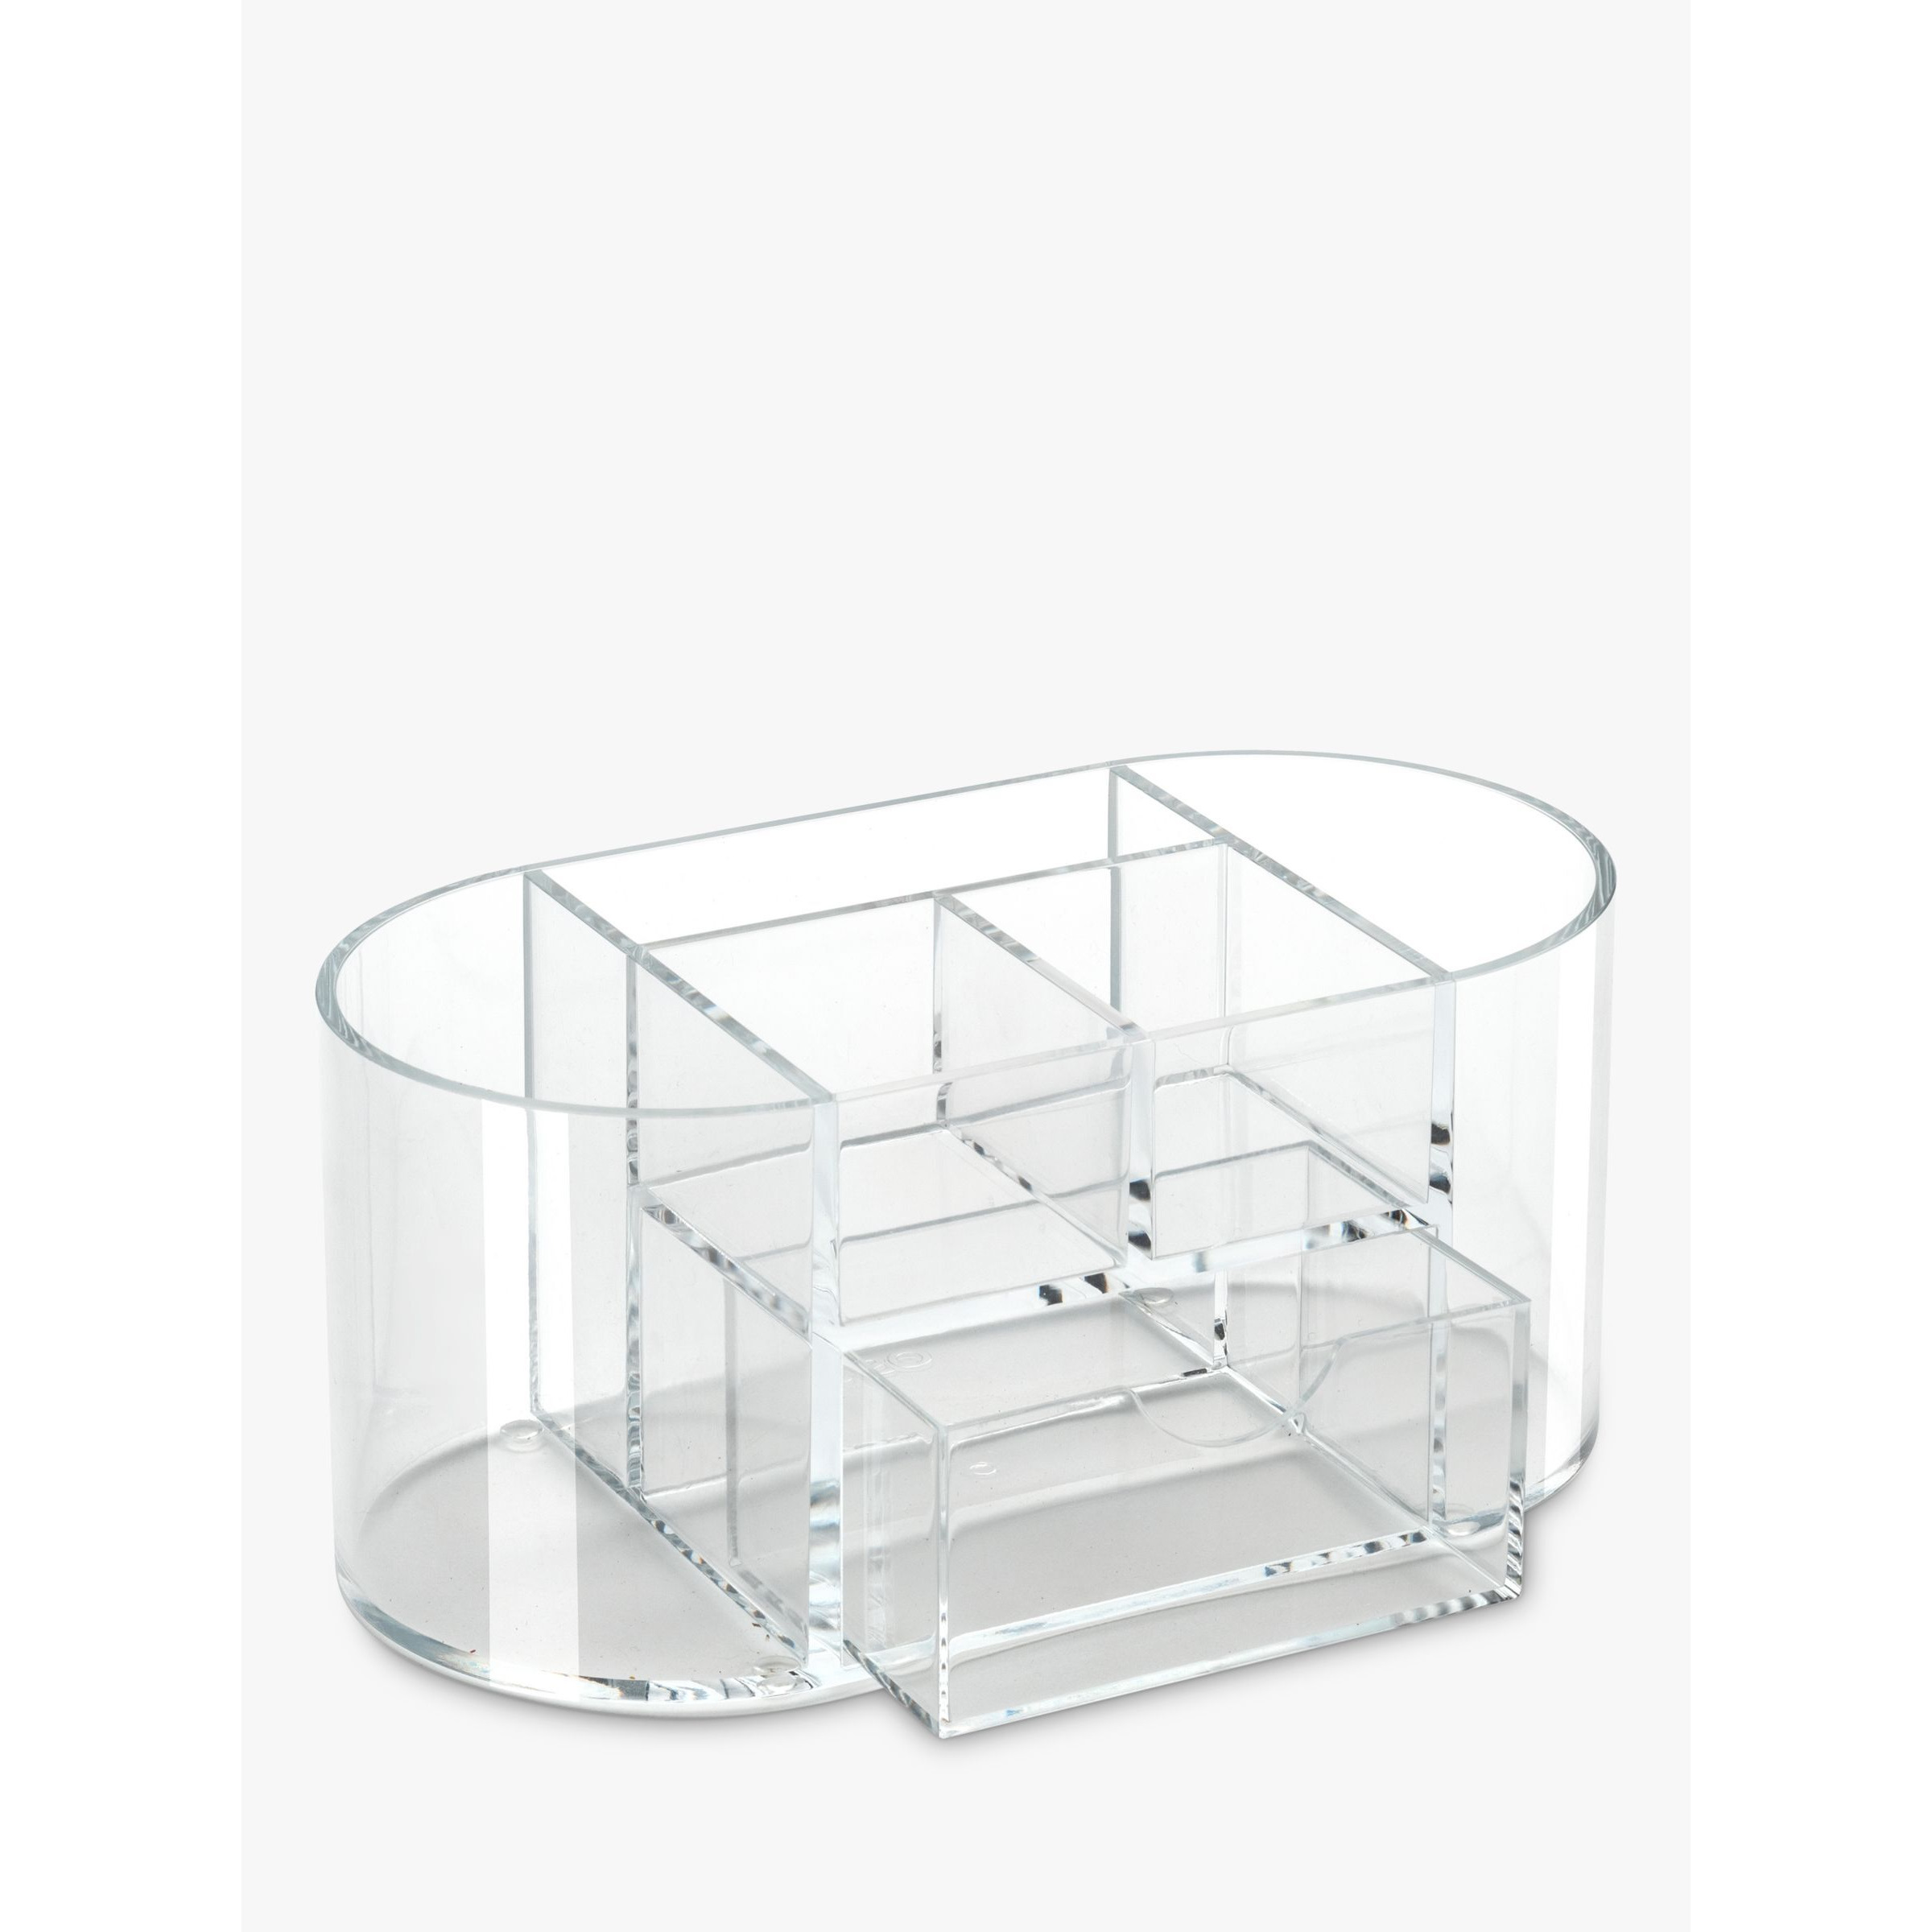 Osco Acrylic 6 Compartment Desk Organiser, Clear - image 1